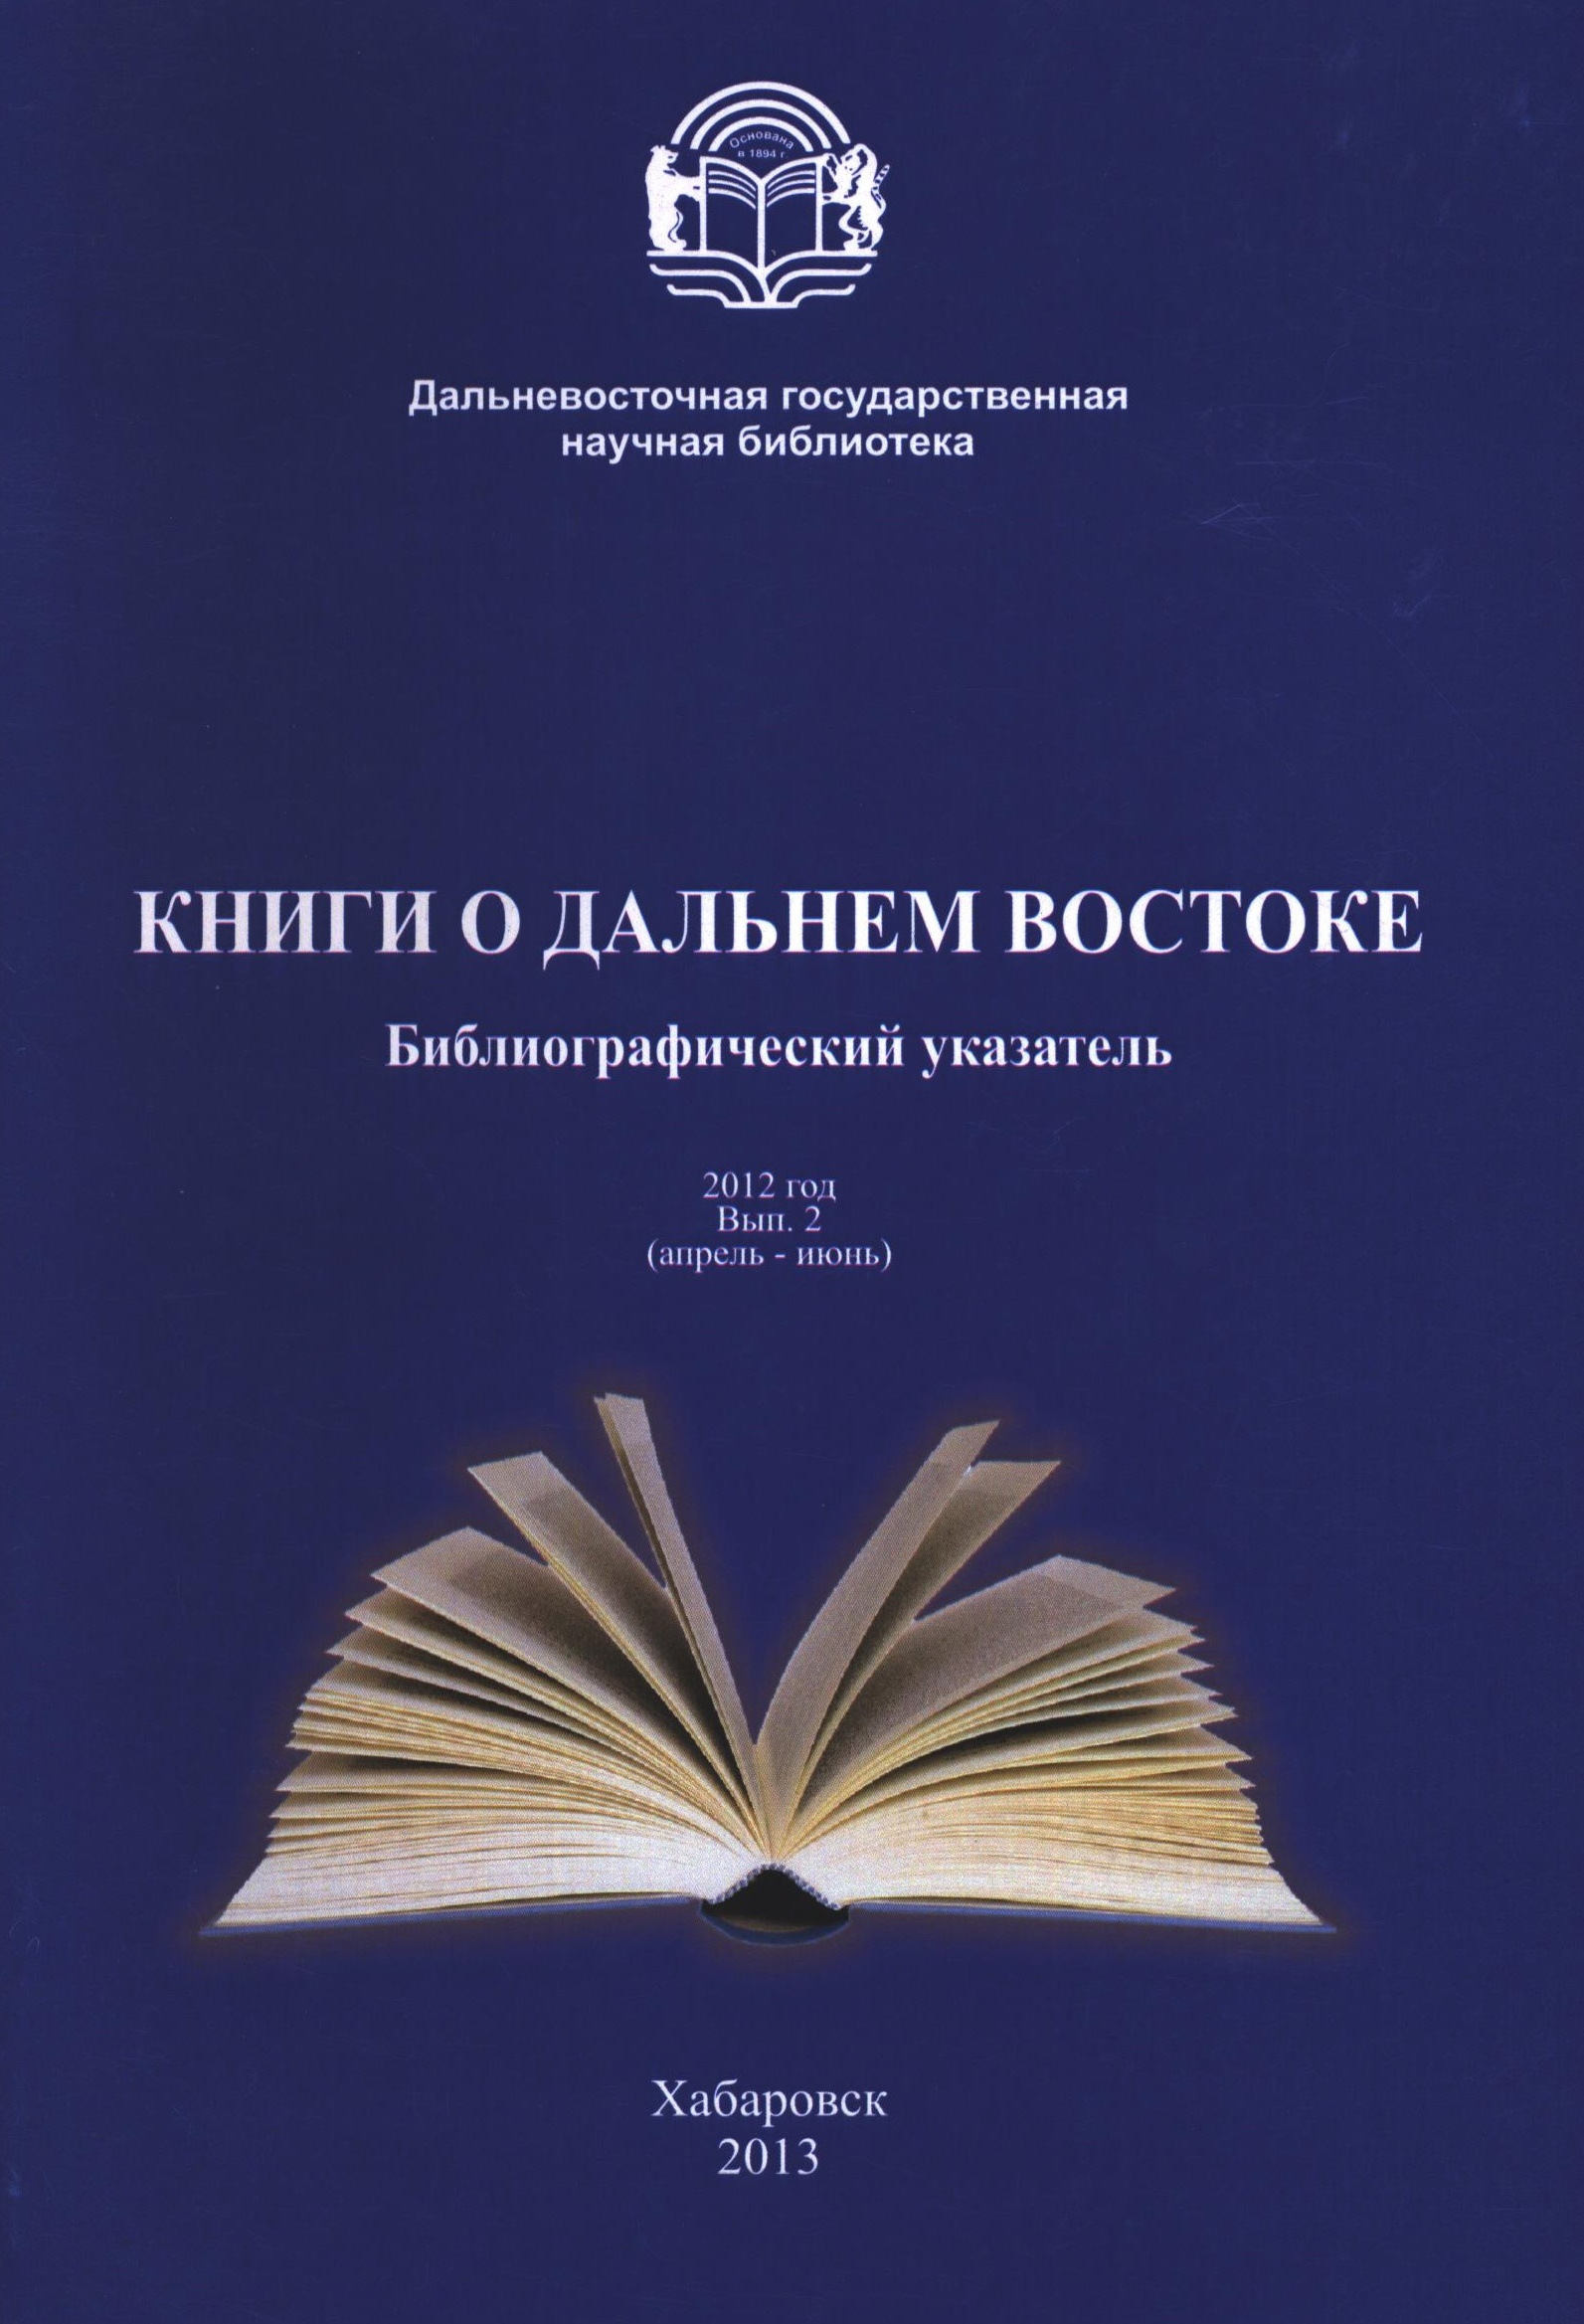 Инструкция по описанию книг на языках стран востока